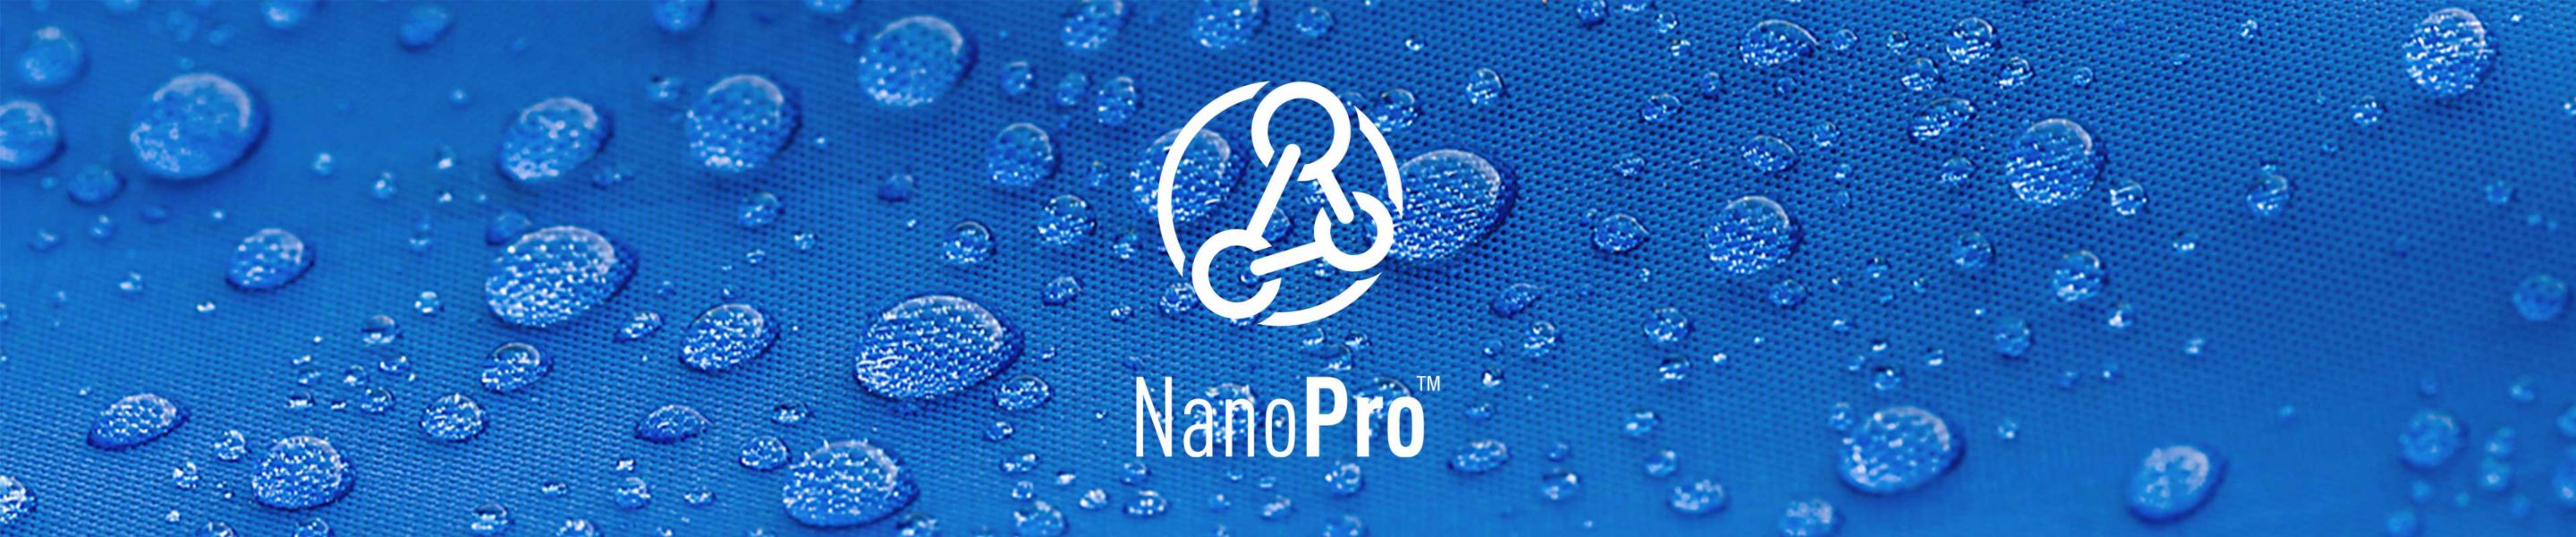 Nano Pro logo